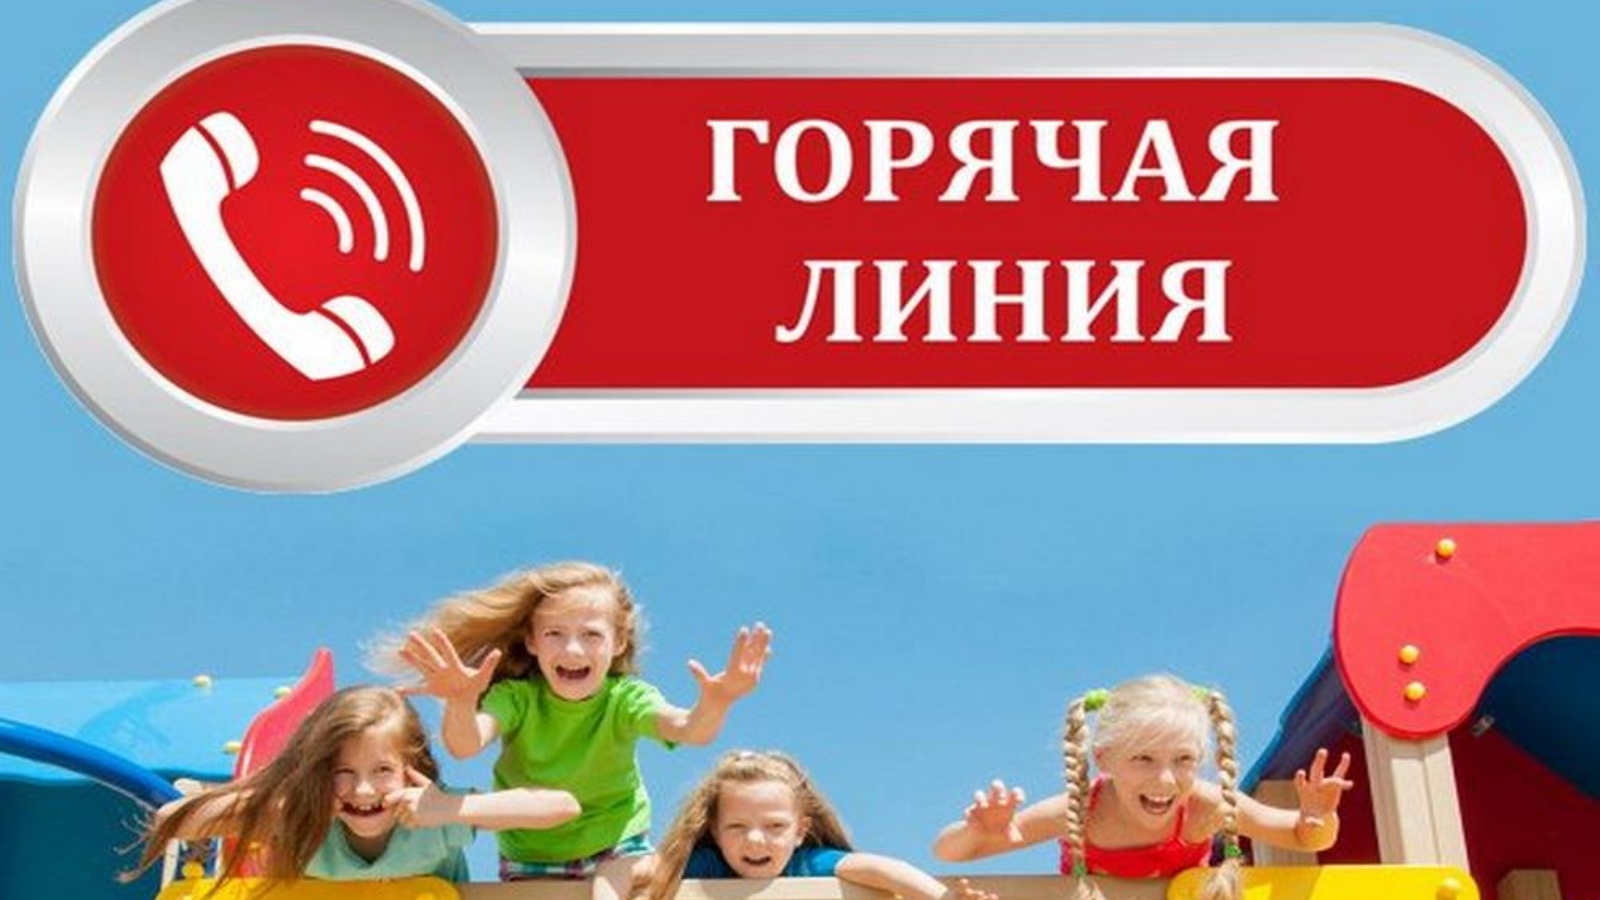 Управления Роспотребнадзора по Вологодской области проведёт «горячей линии» по организации детского отдыха.